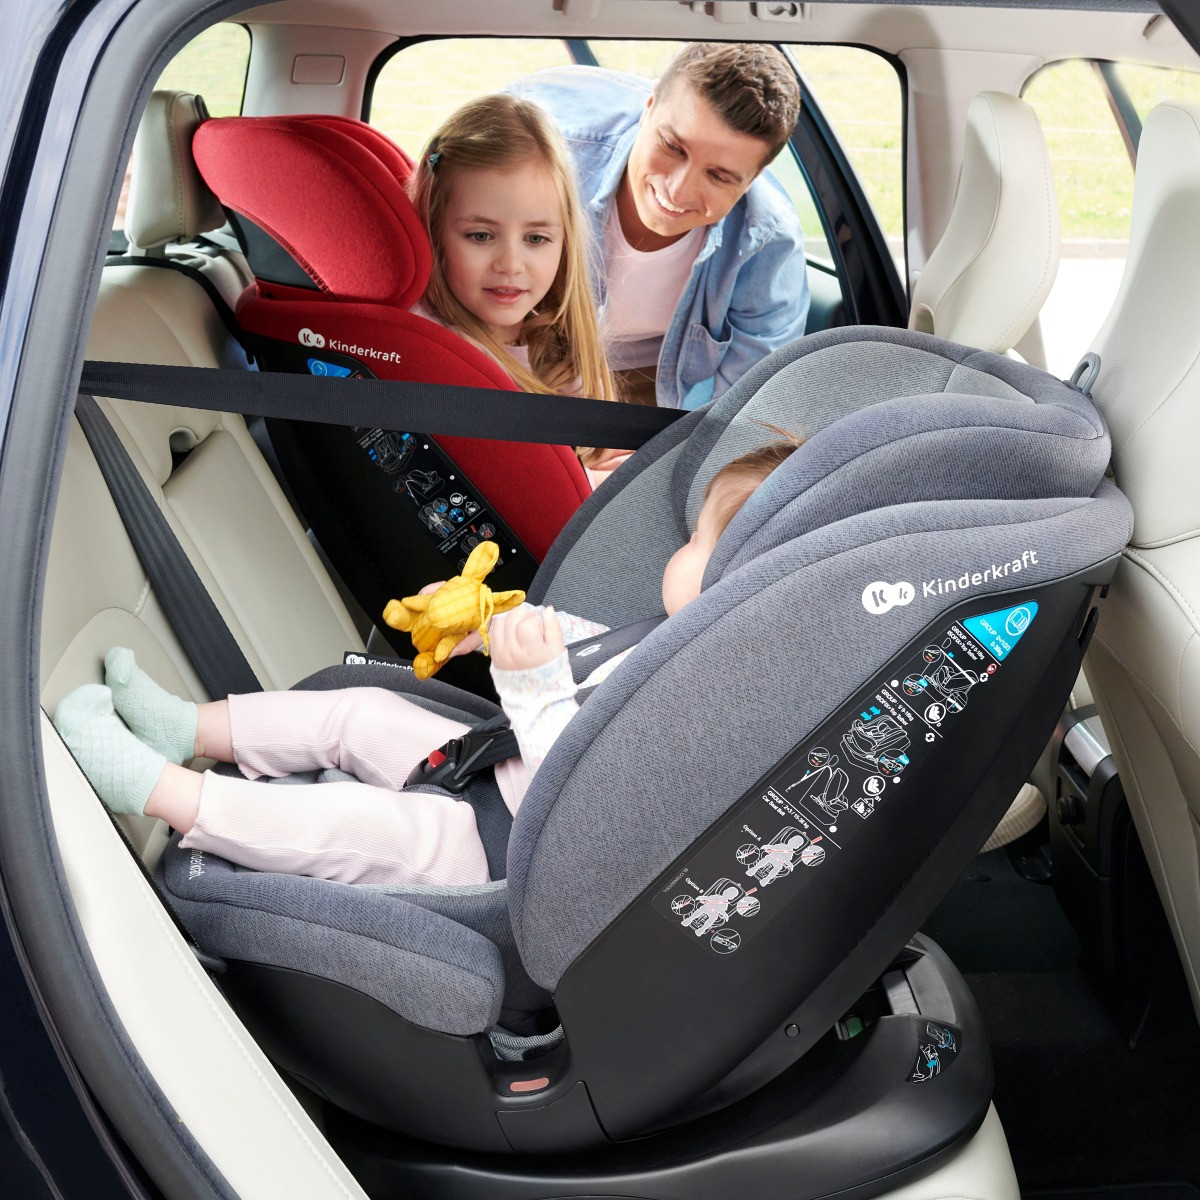 Siege auto :choisir le meilleur de la sécurité bébé. Livraison offerte